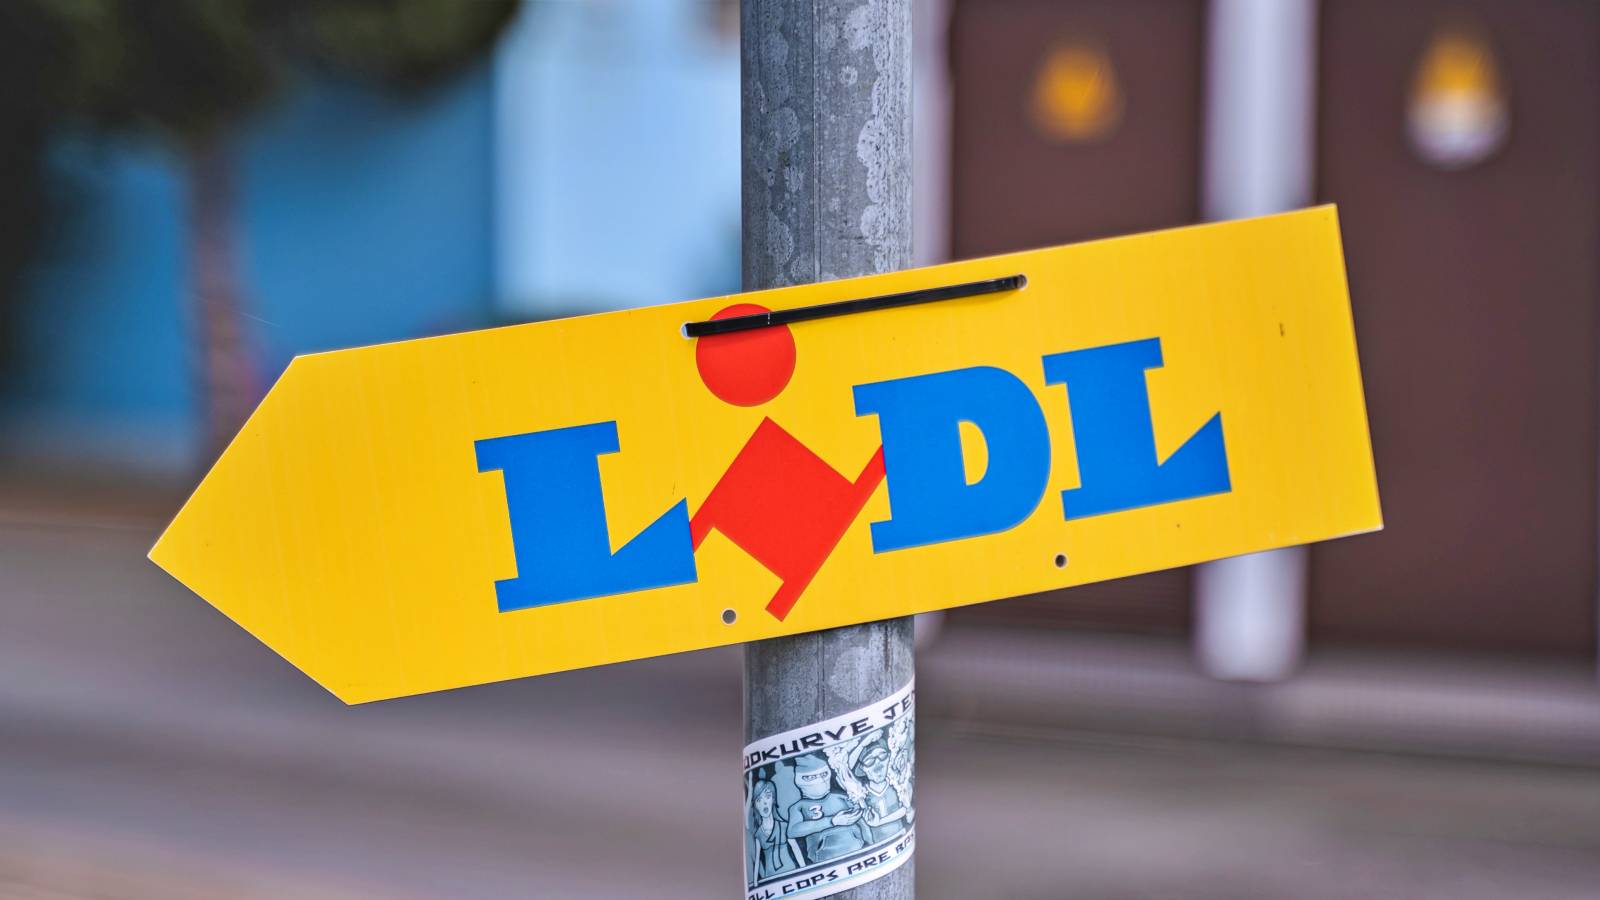 LIDL Romania Butiksændringer annonceret til alle rumænere